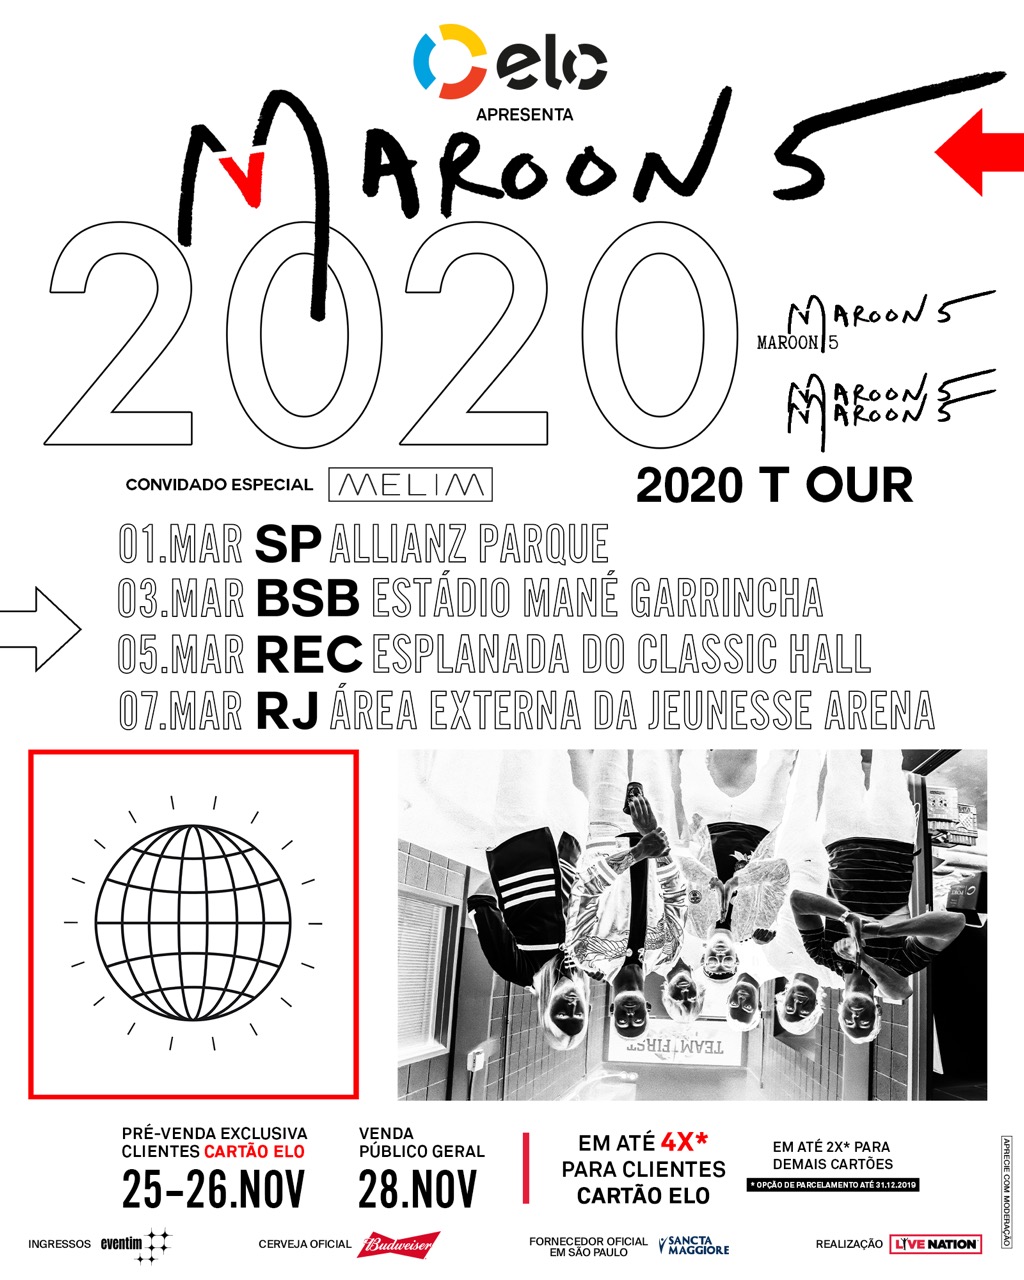 Resultado de imagem para maroon 5 brasil 2020